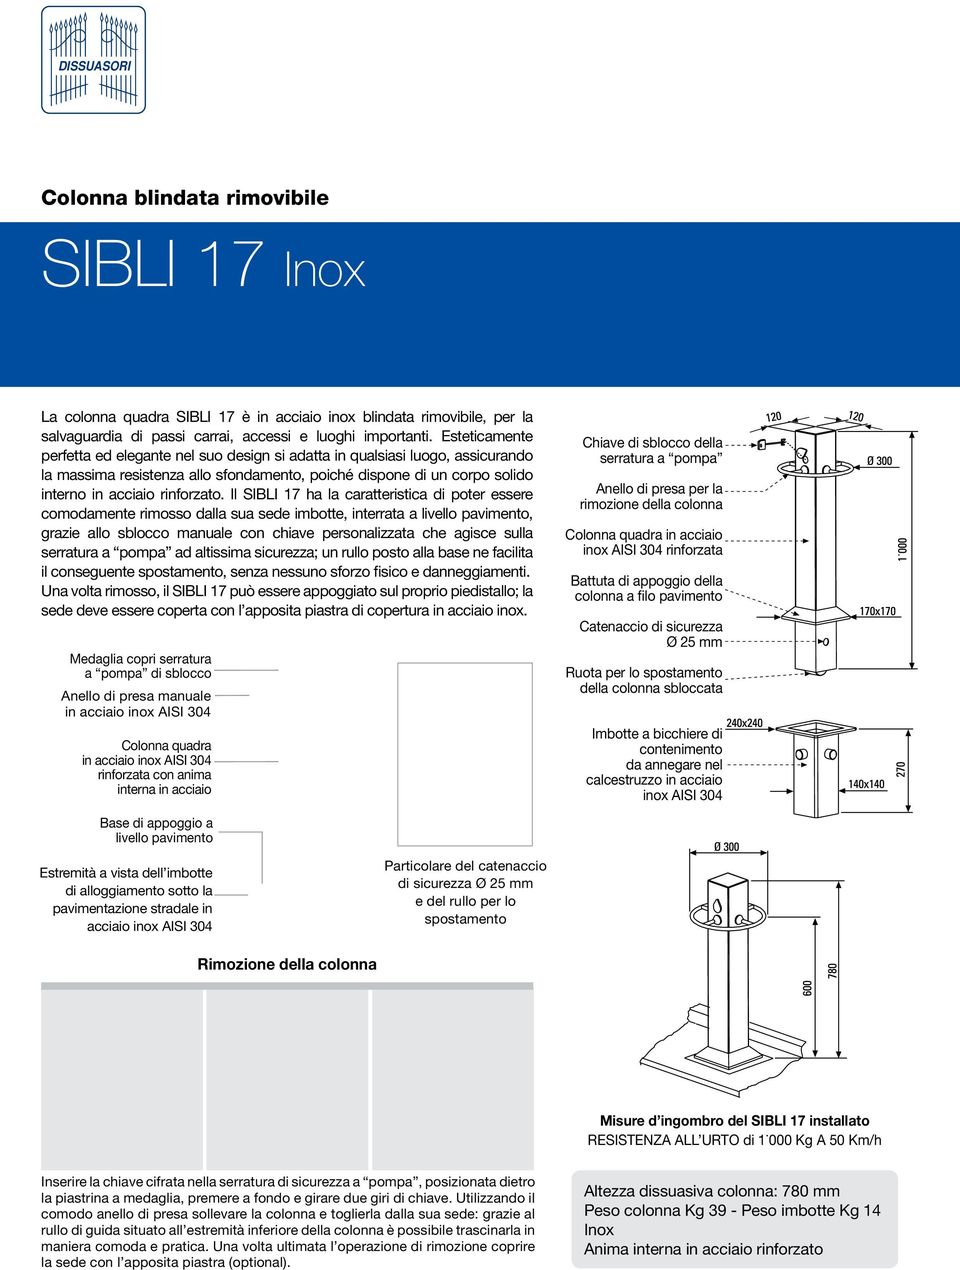 Il SIBLI 17 ha la caratteristica di poter essere comodamente rimosso dalla sua sede imbotte, interrata a livello pavimento, grazie allo sblocco manuale con chiave personalizzata che agisce sulla